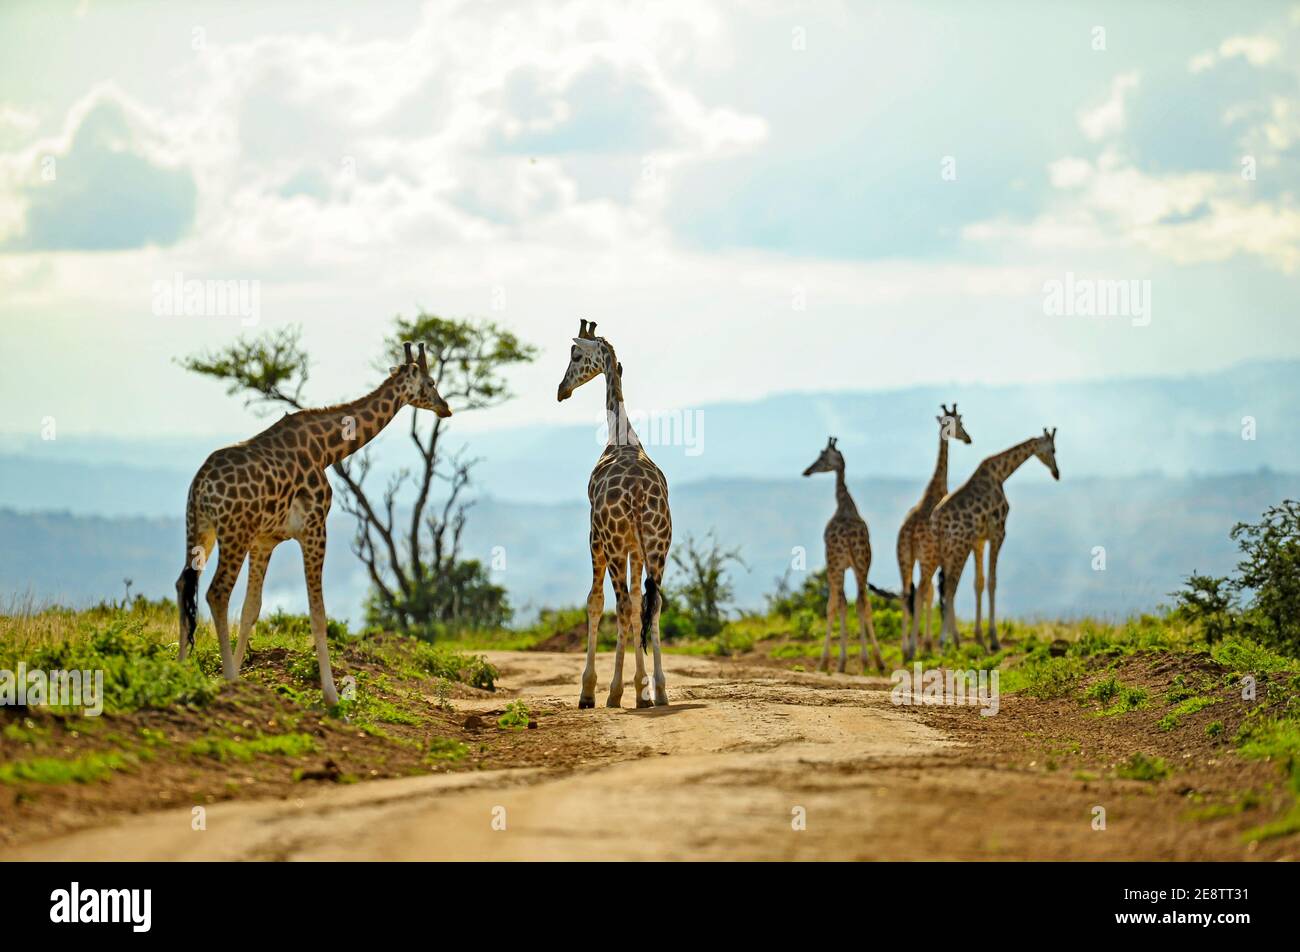 Les girafes sauvages se déplacent librement dans la réserve de Murchison en Ouganda. Afrique. Banque D'Images